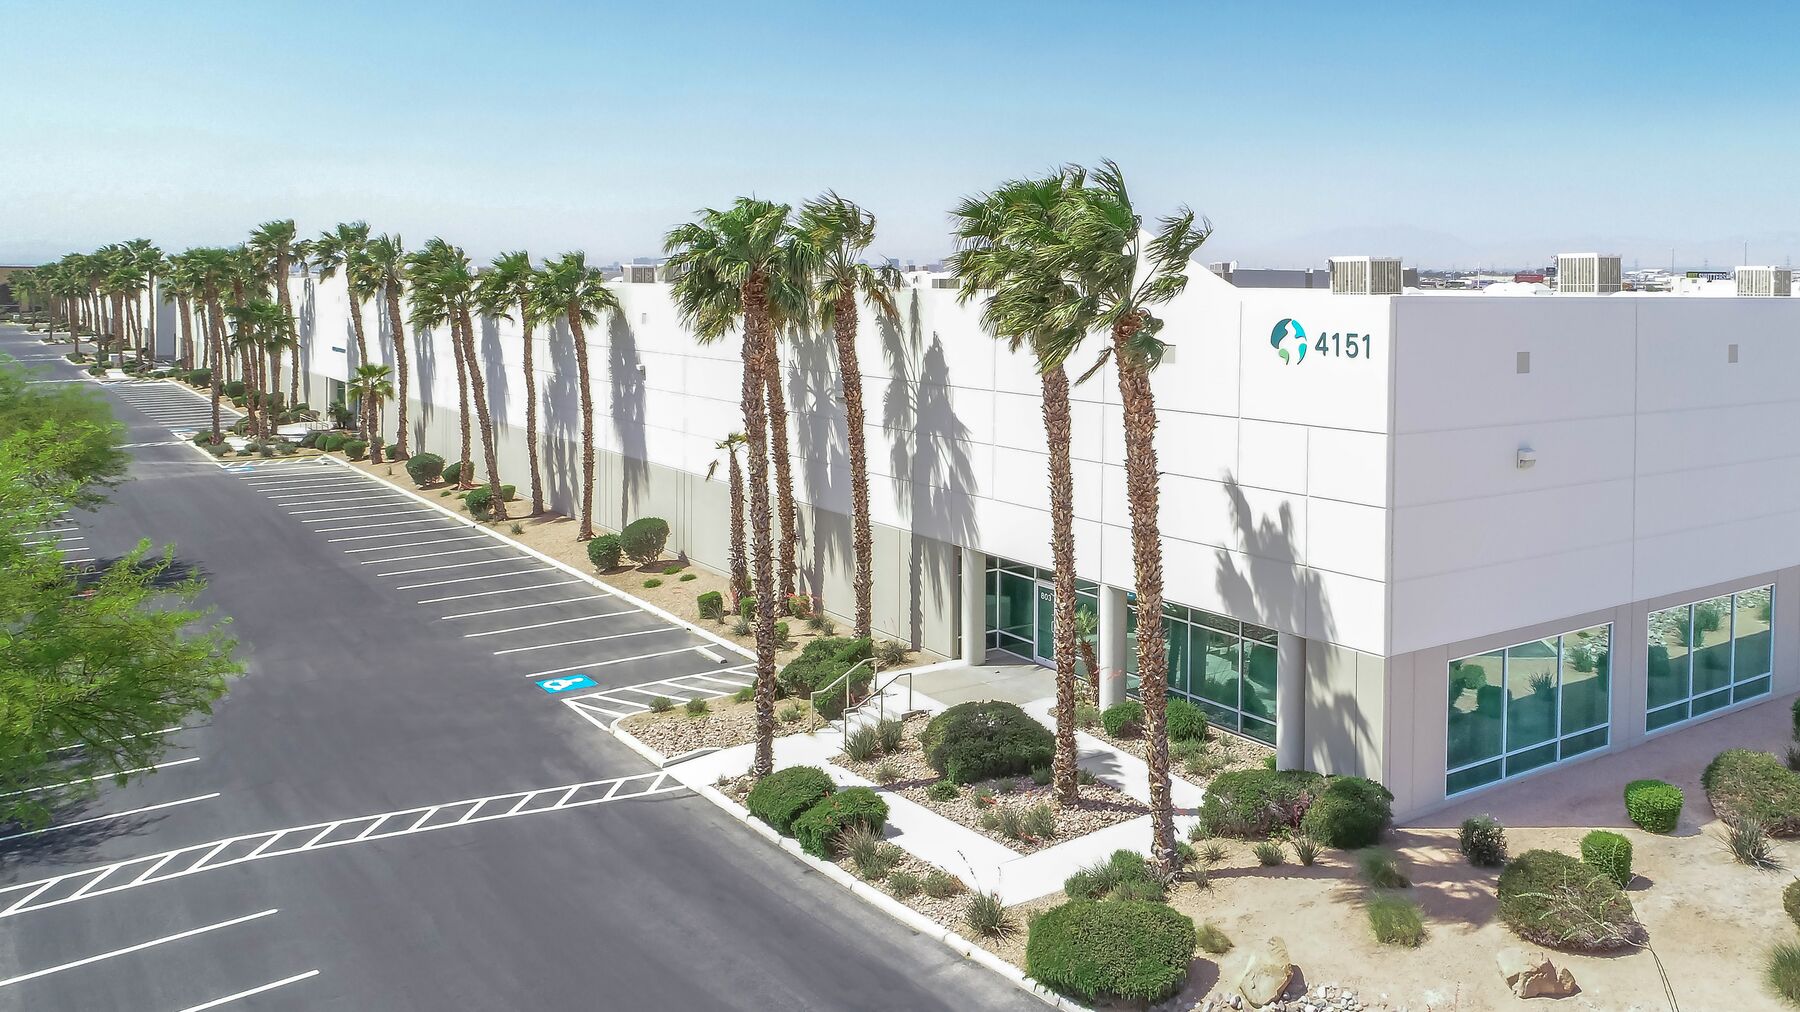 Las Vegas Corporate Center